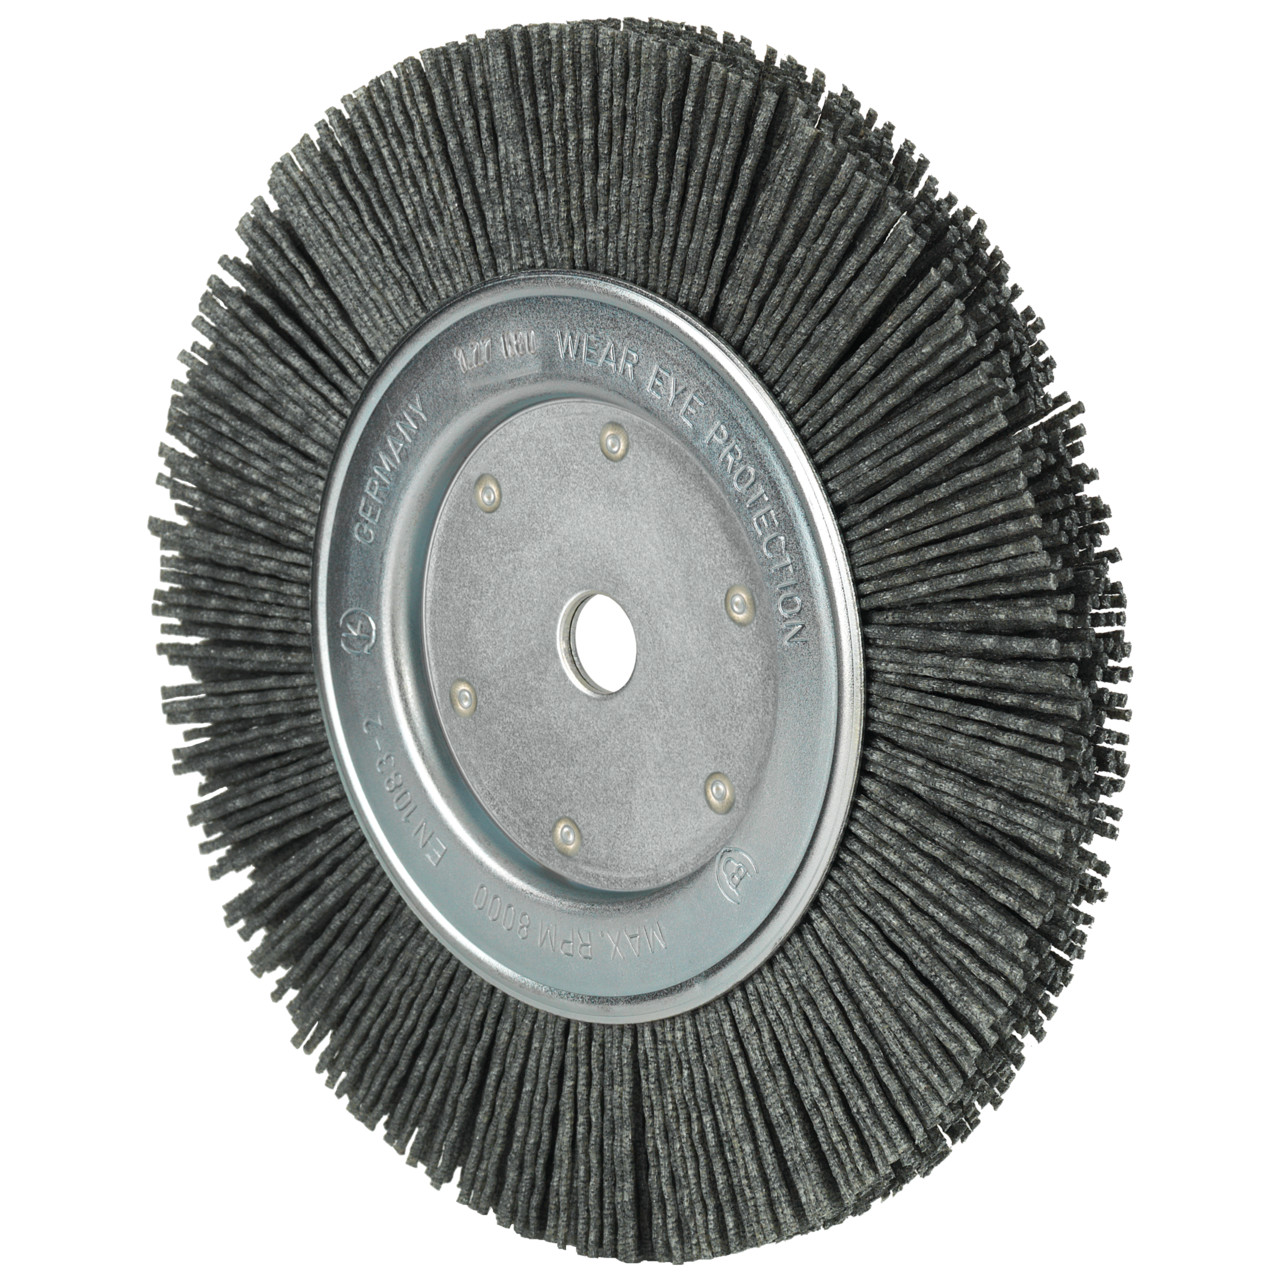 Tyrolit spazzole rotonde DxLxH 150x13x34x32 Per uso universale, forma: 1RDK - (spazzole rotonde), Art. 34043578